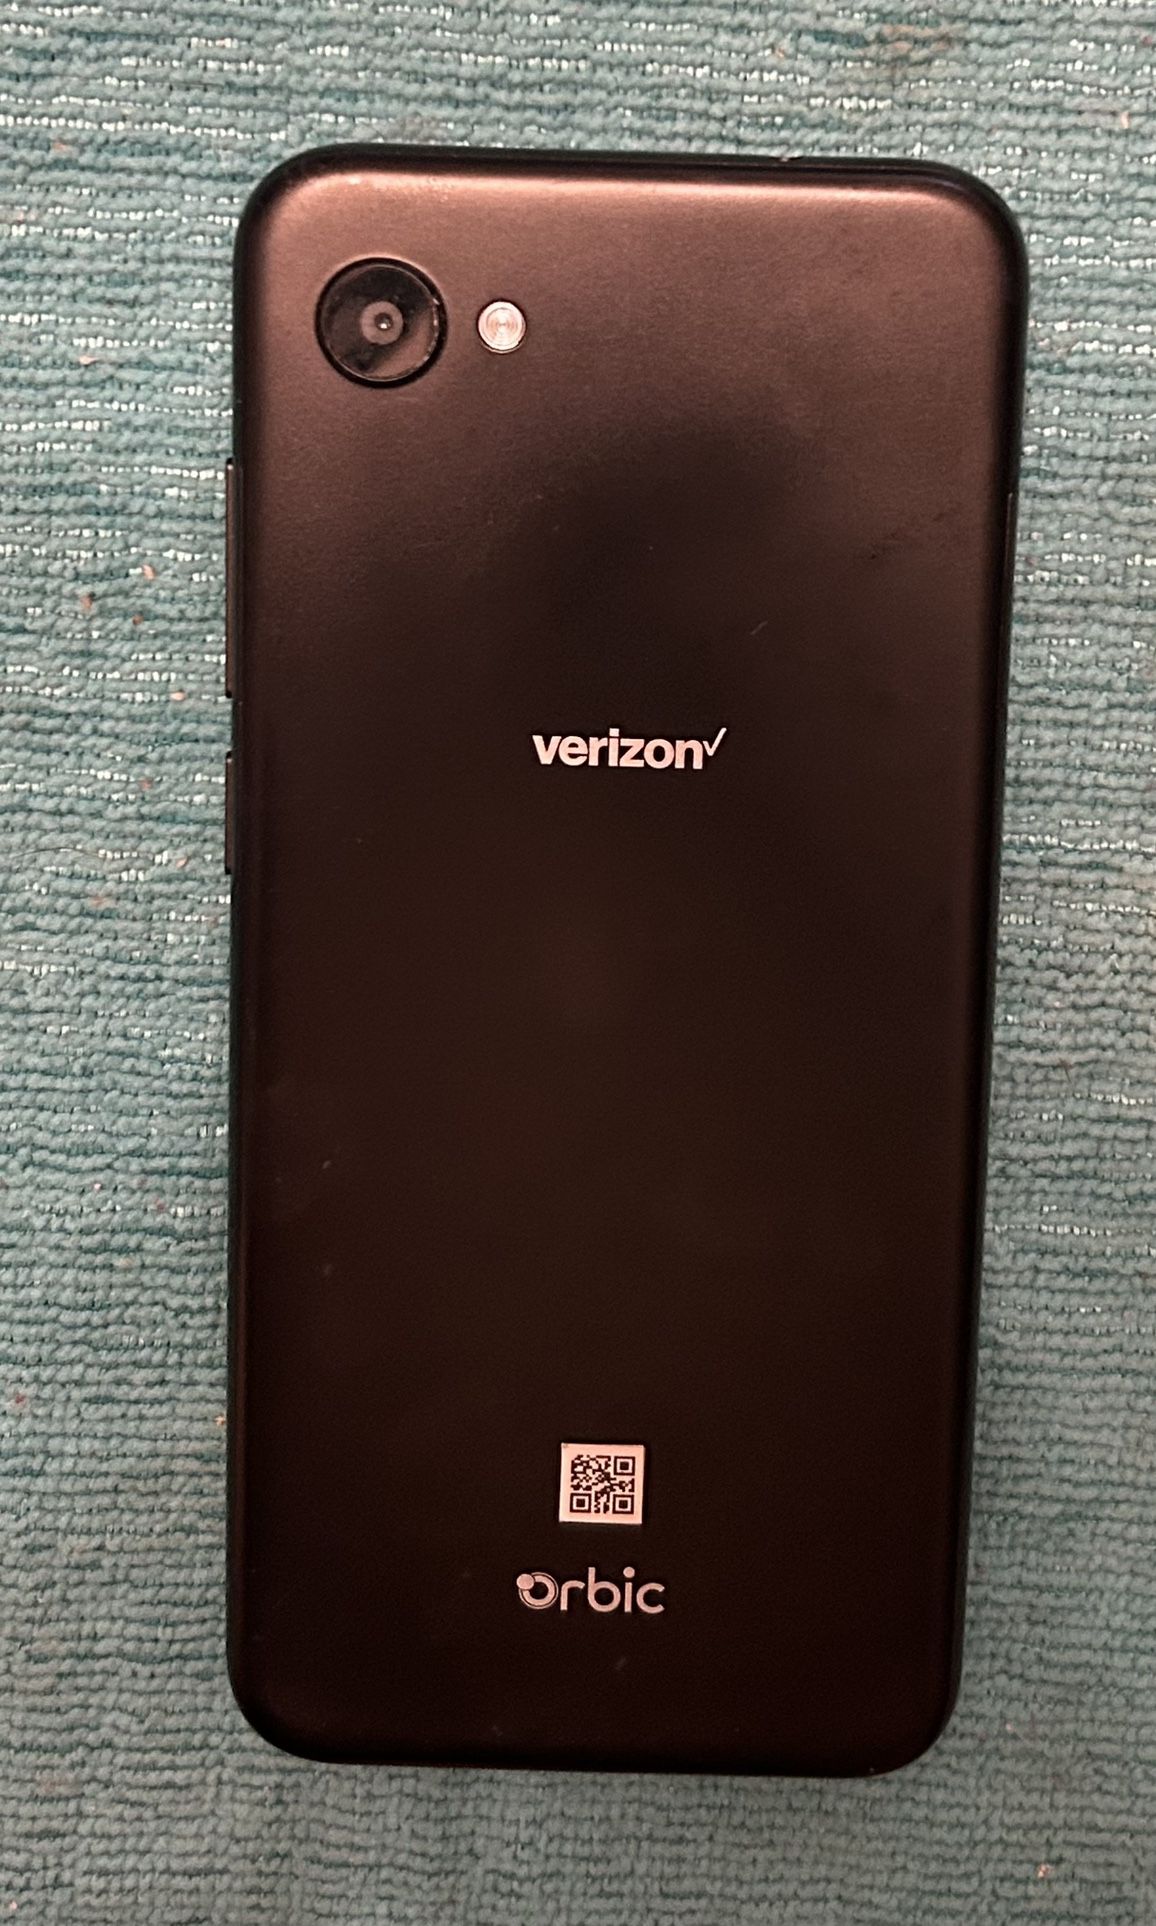 Brand New Verizon Phone 